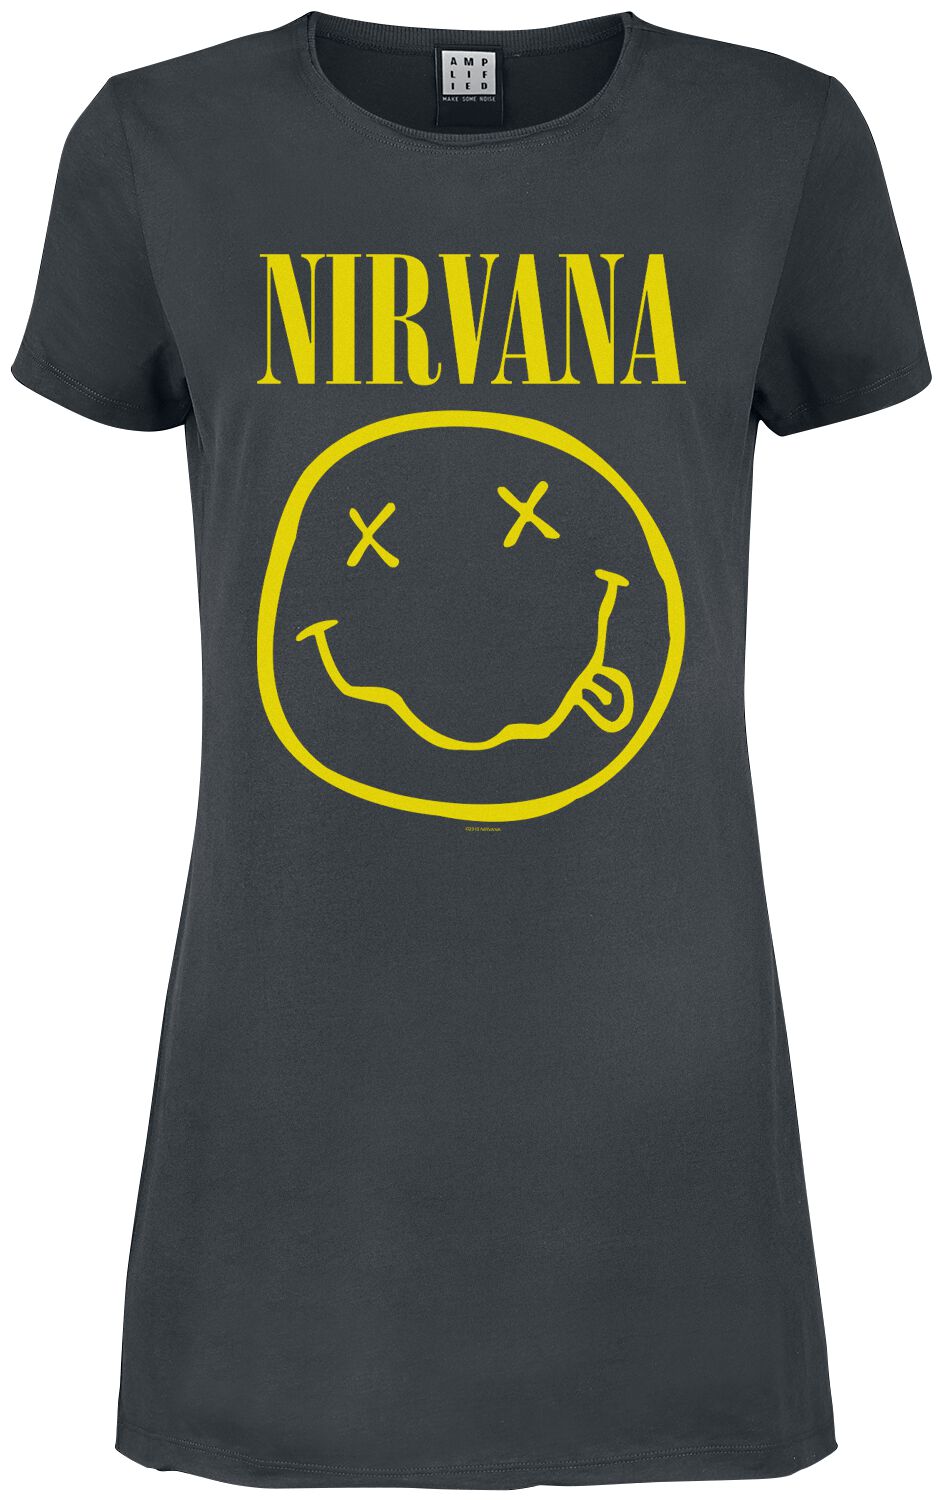 Nirvana Kurzes Kleid - Amplified Collection - Smiley - S bis XXL - für Damen - Größe XL - charcoal  - Lizenziertes Merchandise!